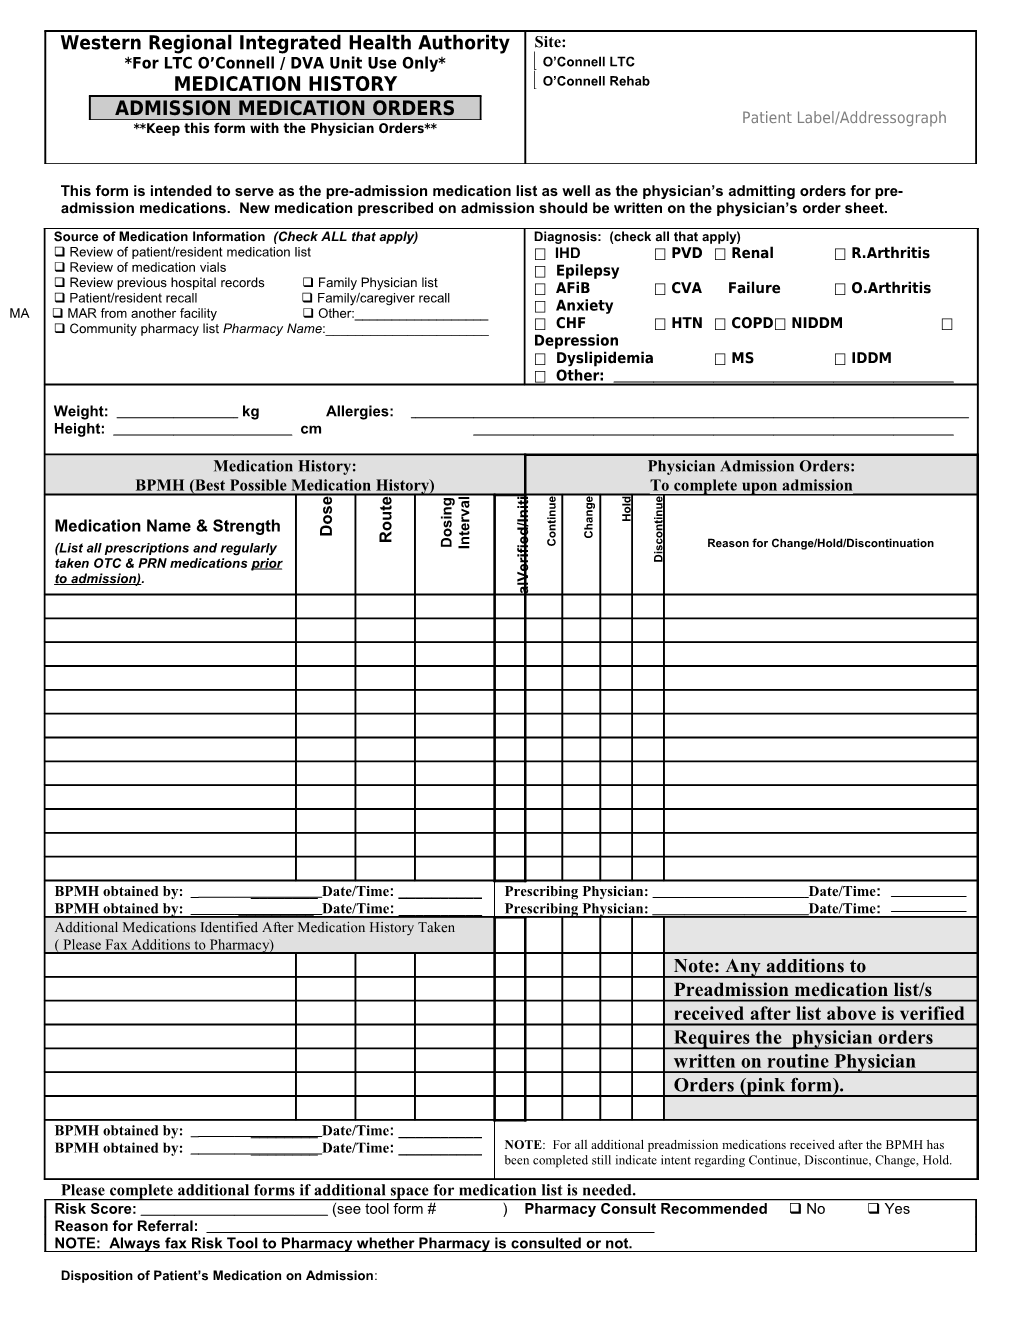 LTC Med Rec Admission Order/BPMH Form